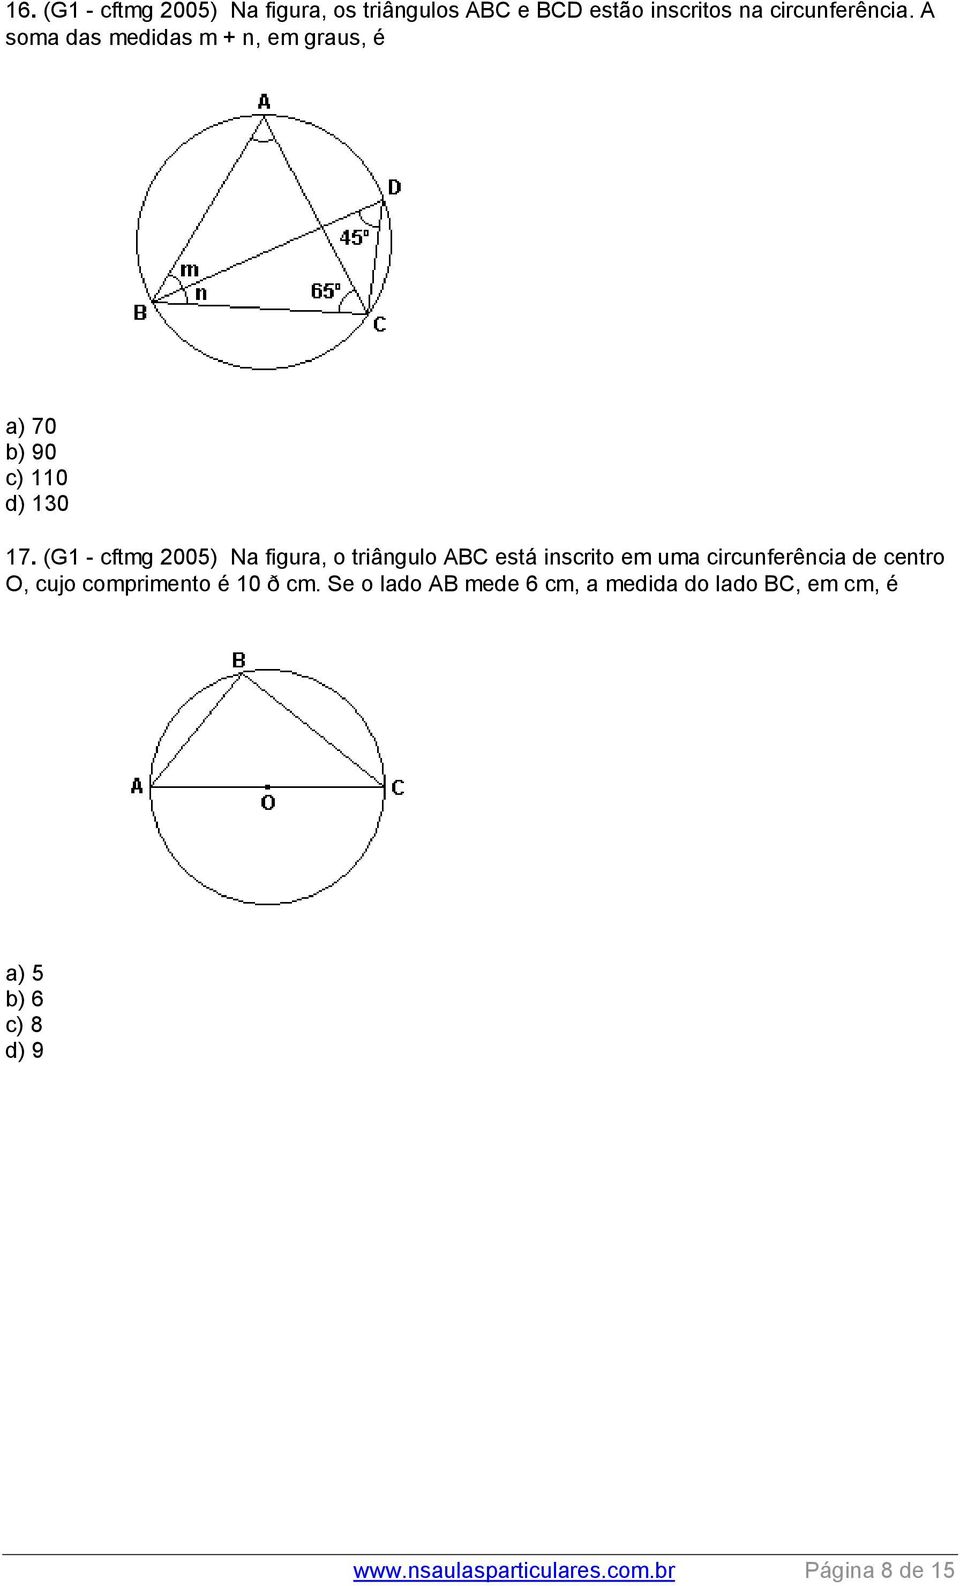 (G1 - cftmg 005) Na figura, o triângulo ABC está inscrito em uma circunferência de centro O, cujo